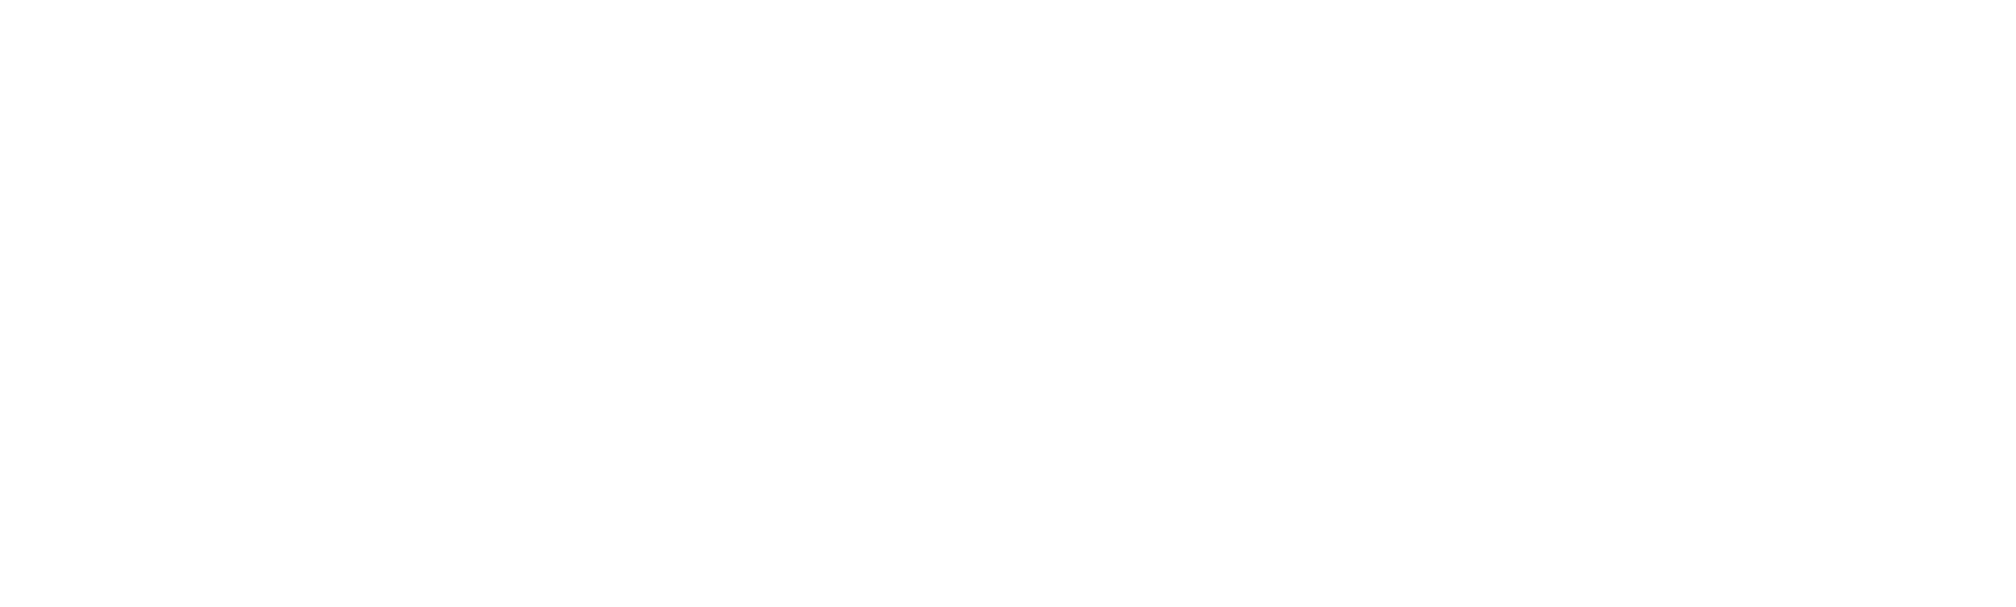 WKNC 88.1